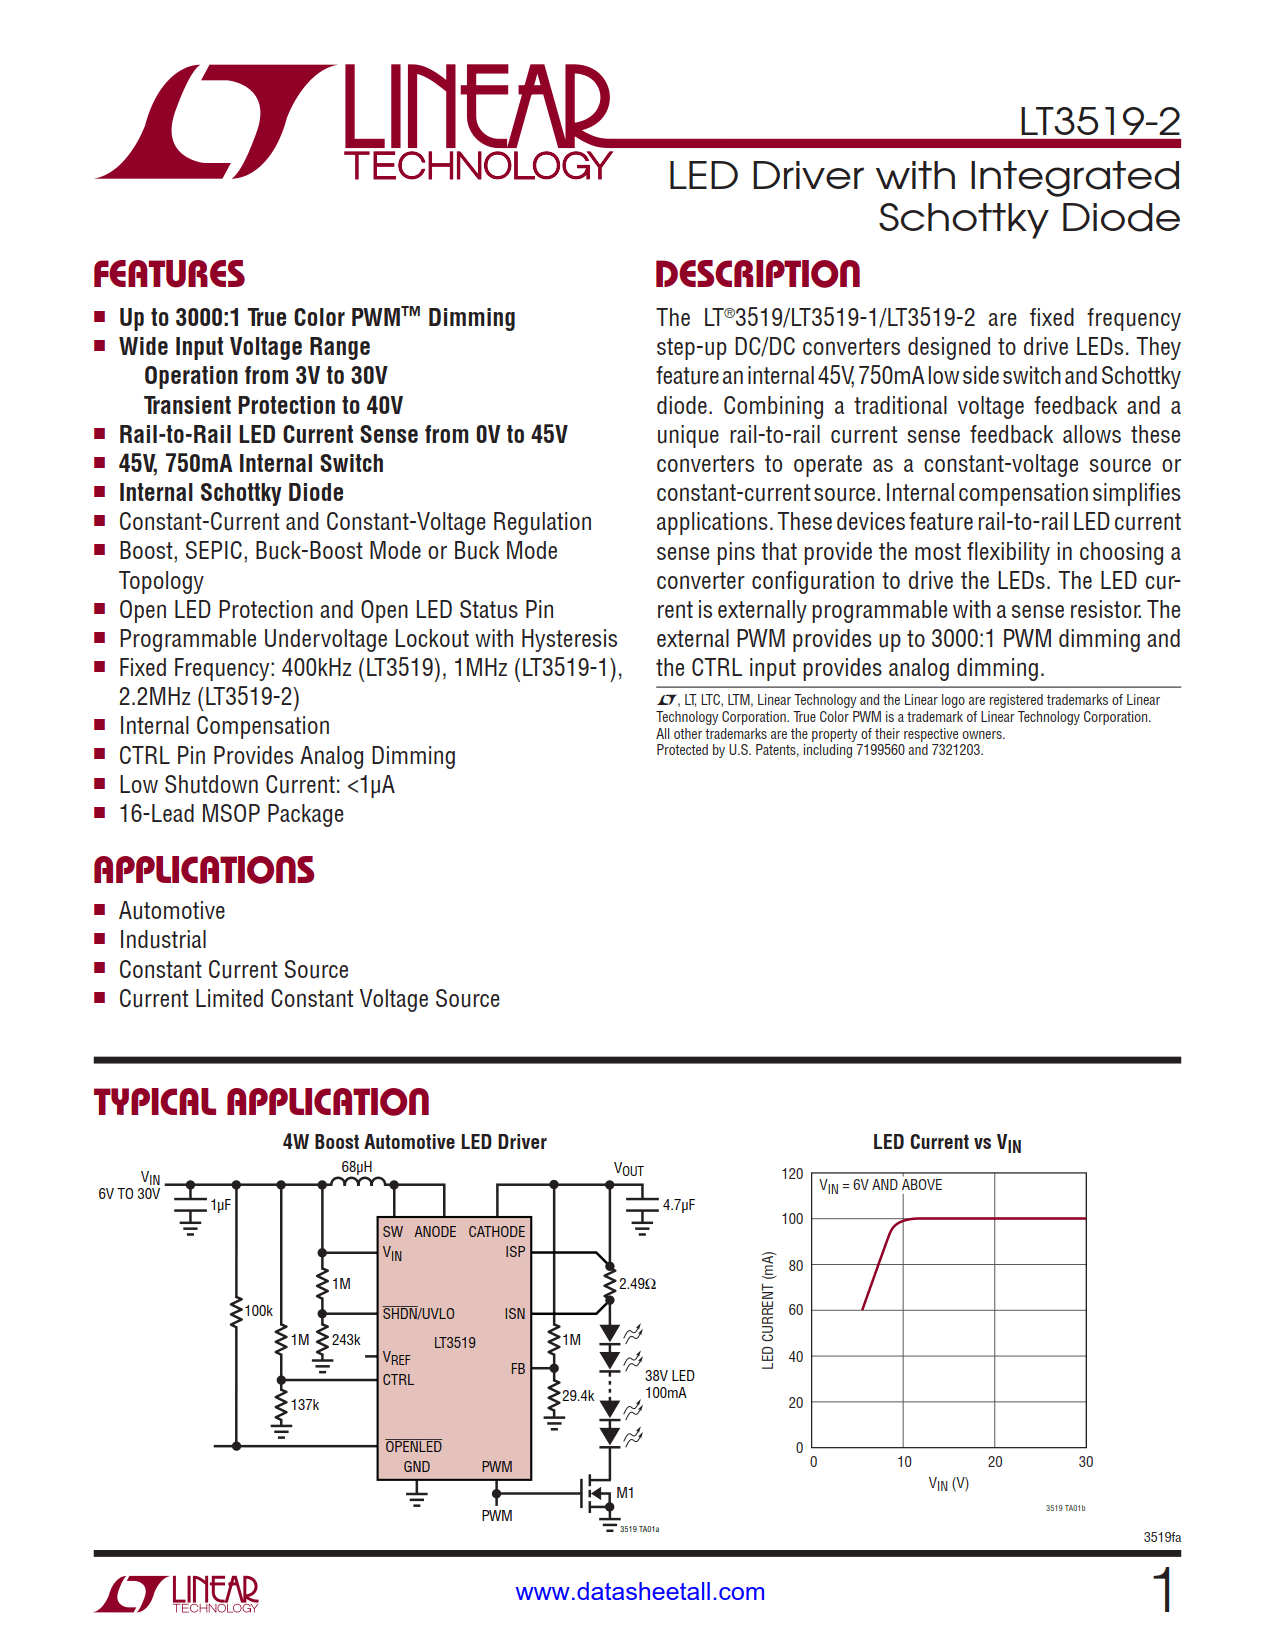 LT3519-2 Datasheet